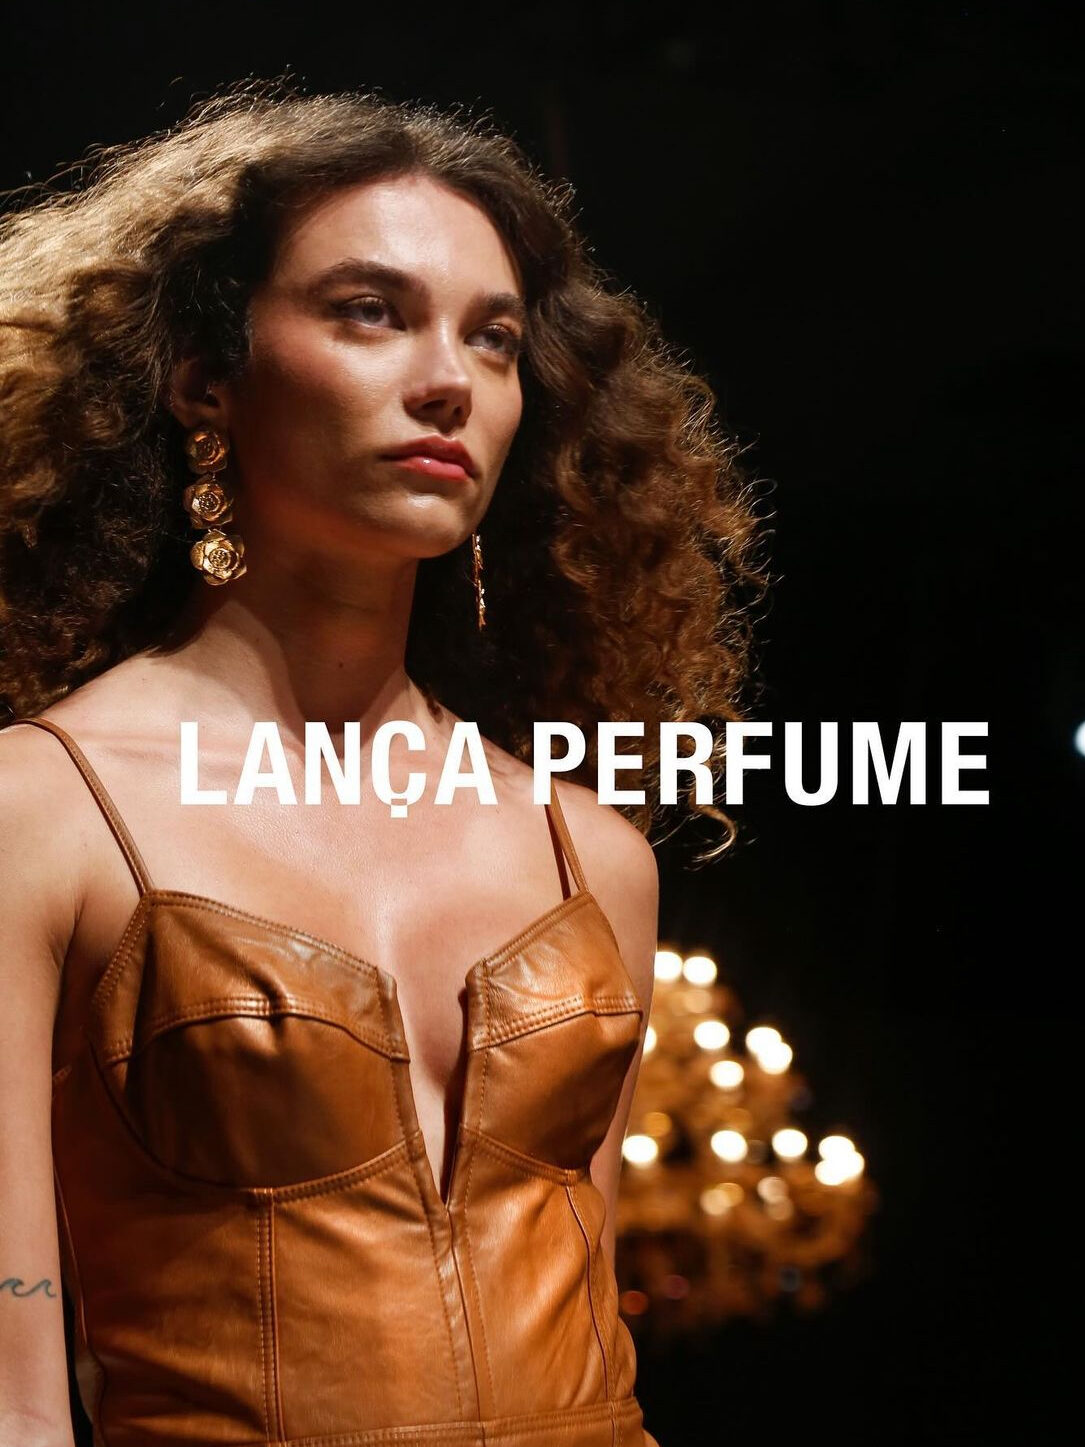 Modelo em fotografia de moda em passarela com uma roupa em couro marrom, por cima da imagem destaca-se "Lança Perfume"